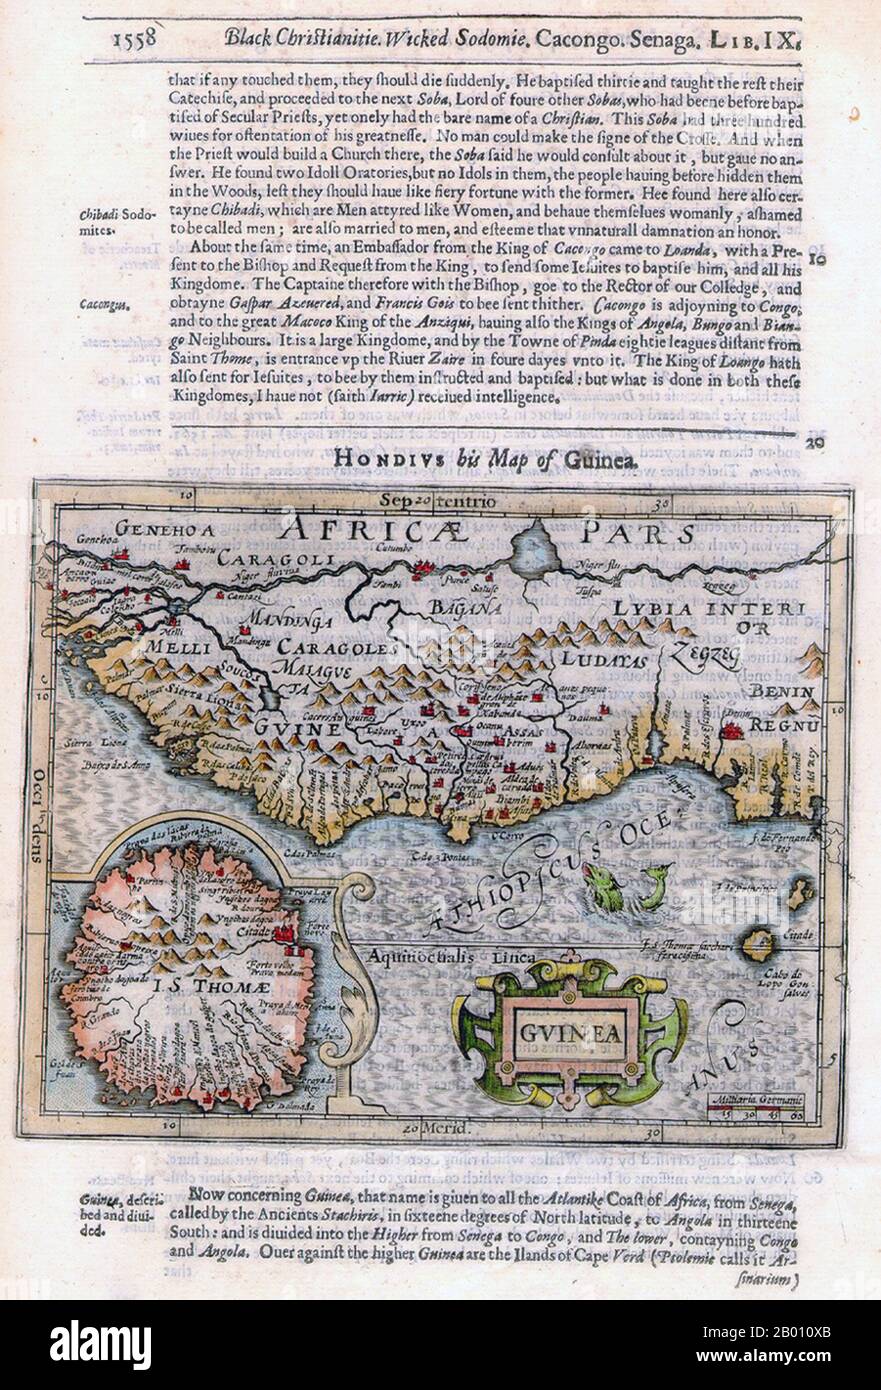 África: Mapa de Guinea y sus alrededores por Jodocus Hondius (1563-1612), 1625. "Benin Regnu", el Reino de Benin, está indicado en el sureste. Versión de página completa titulada: 'Negro Christianitia, sodomie malvada'. Foto de stock